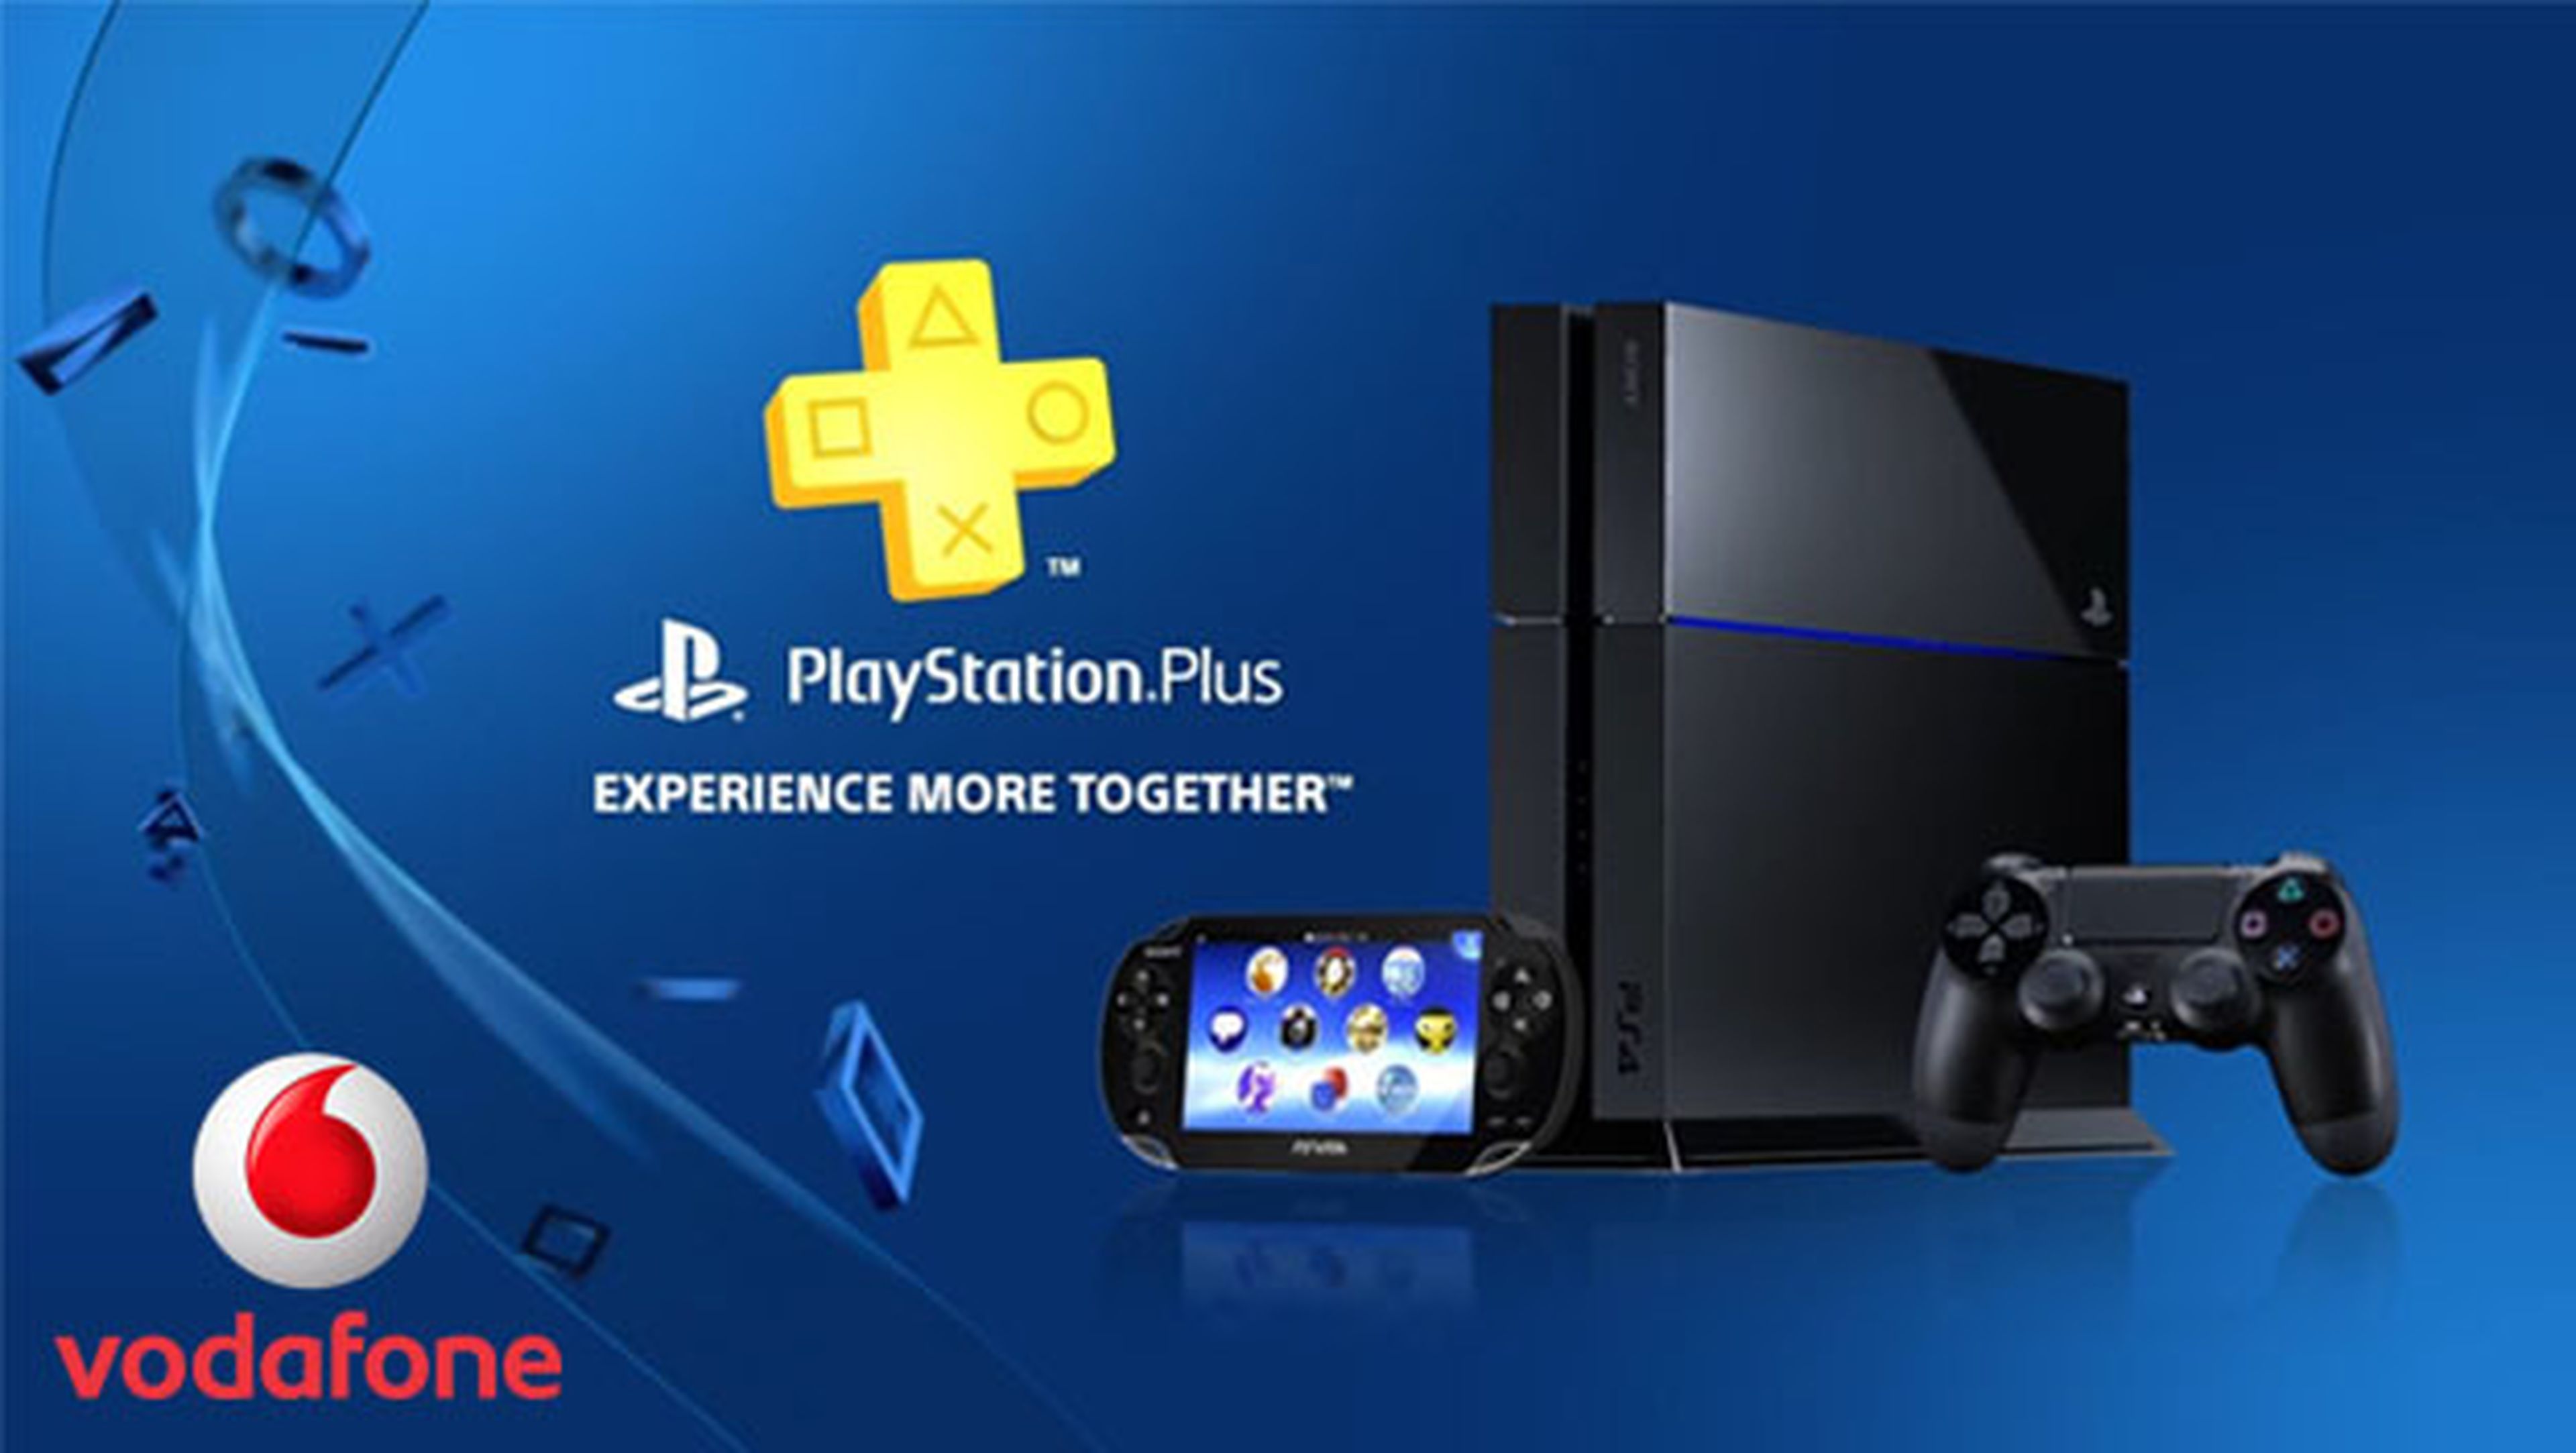 PlayStation Plus gratis durante 1 año clientes Vodafone